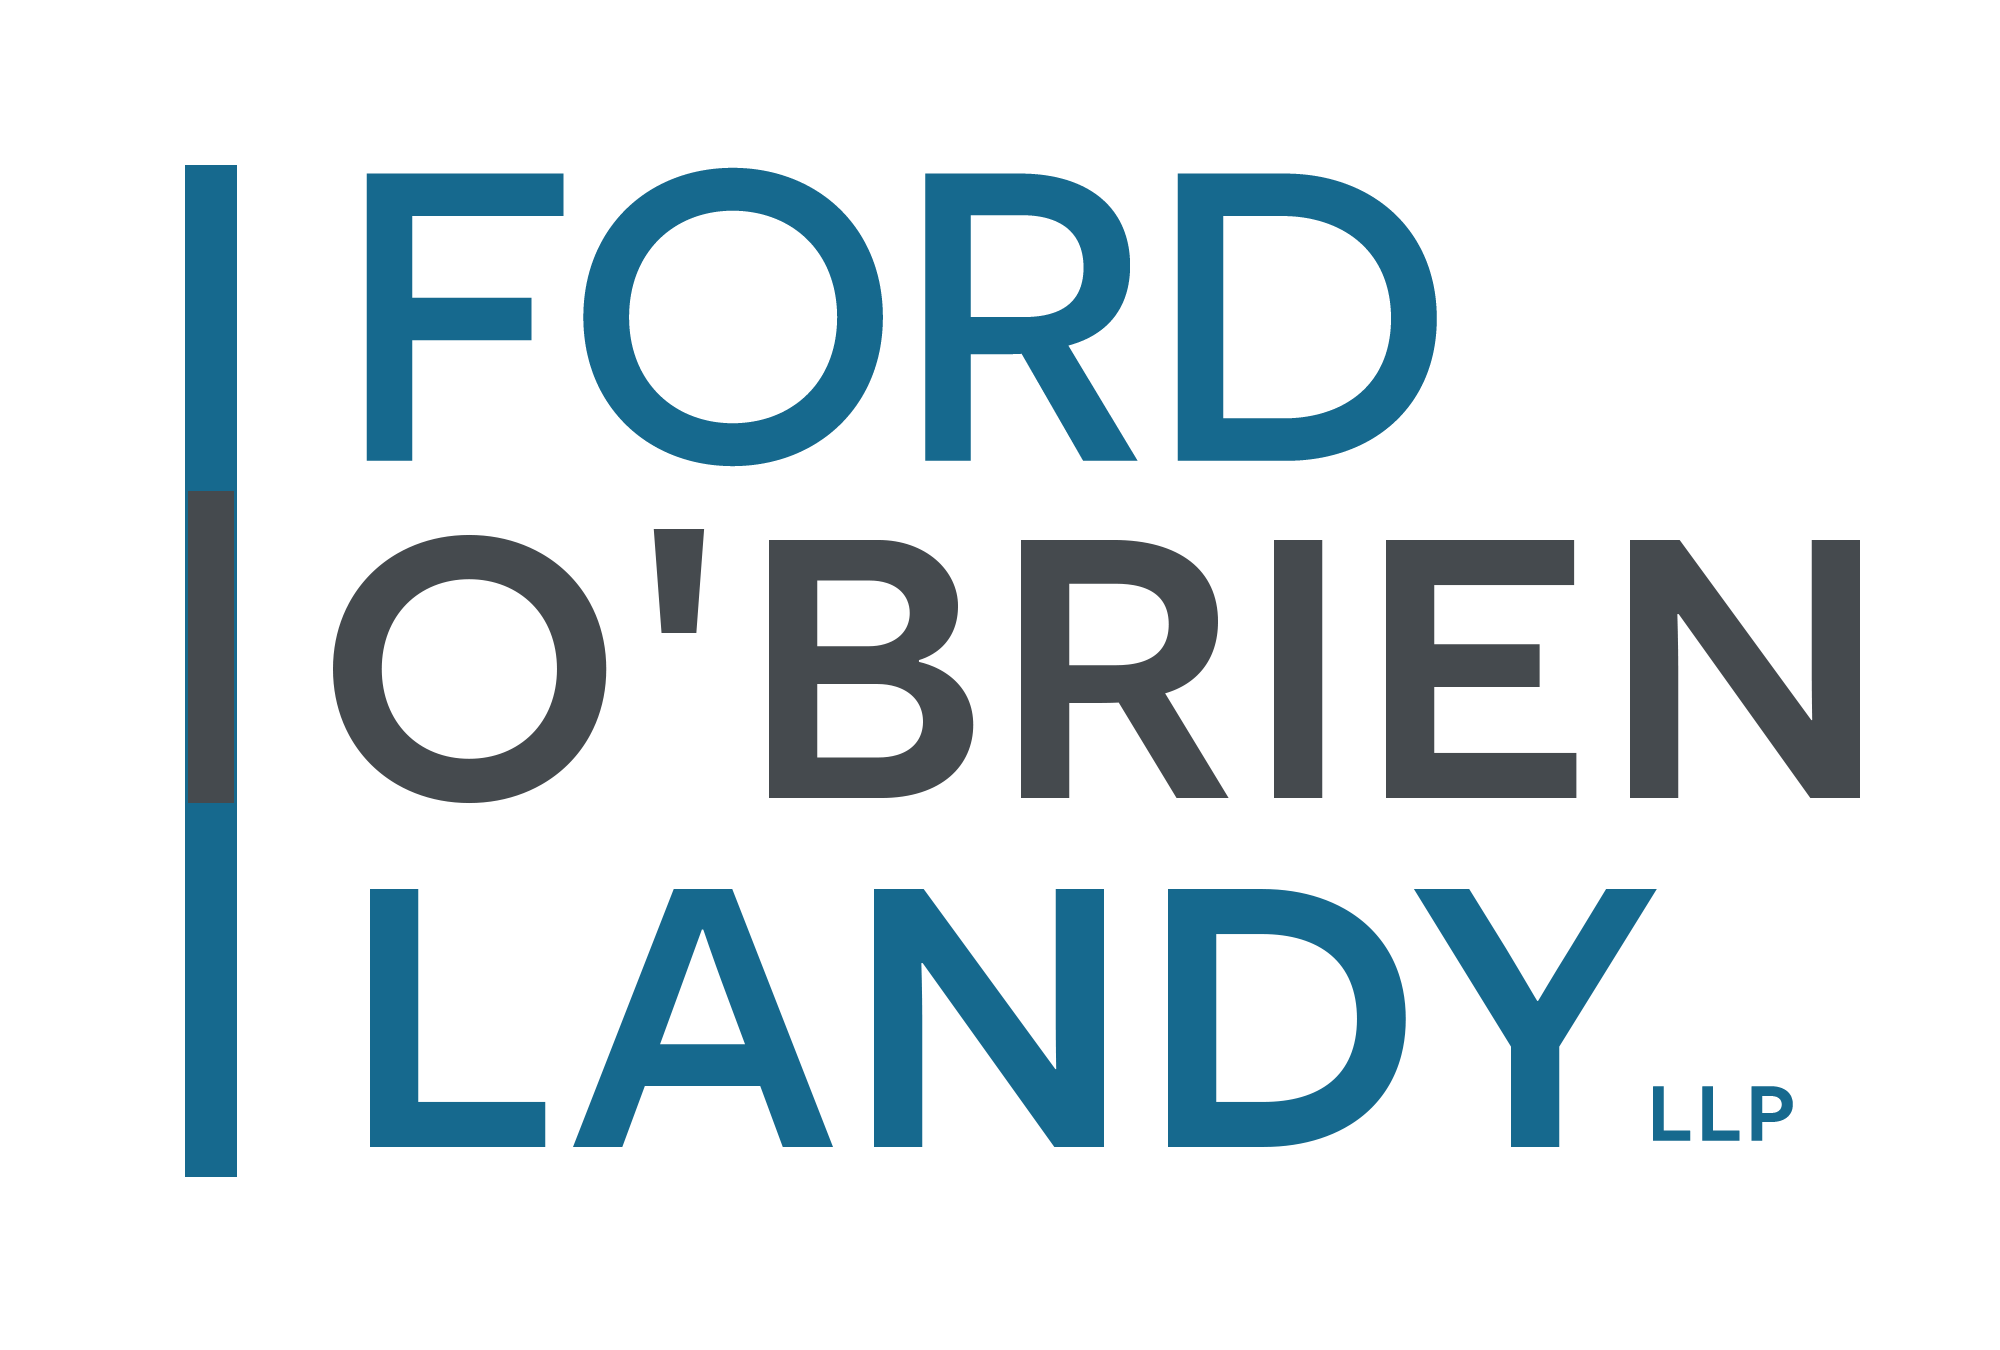 Ford O'Brien Landy LLP